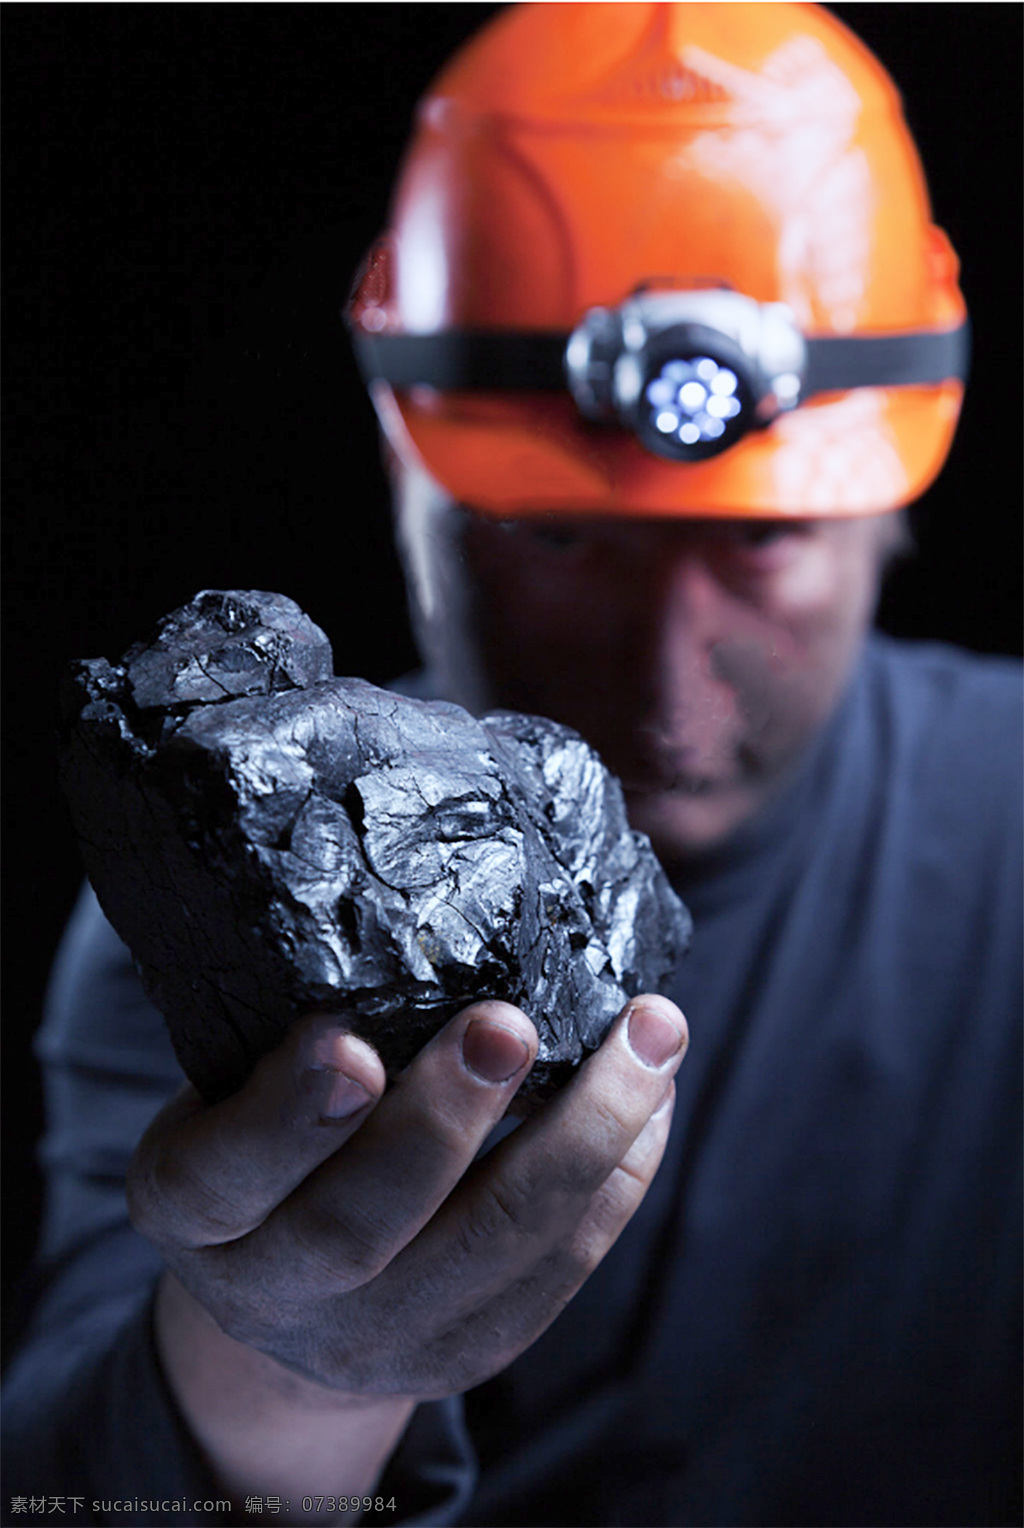 煤矿工人图片 煤矿工人 煤矿 煤 工人 手拿煤矿